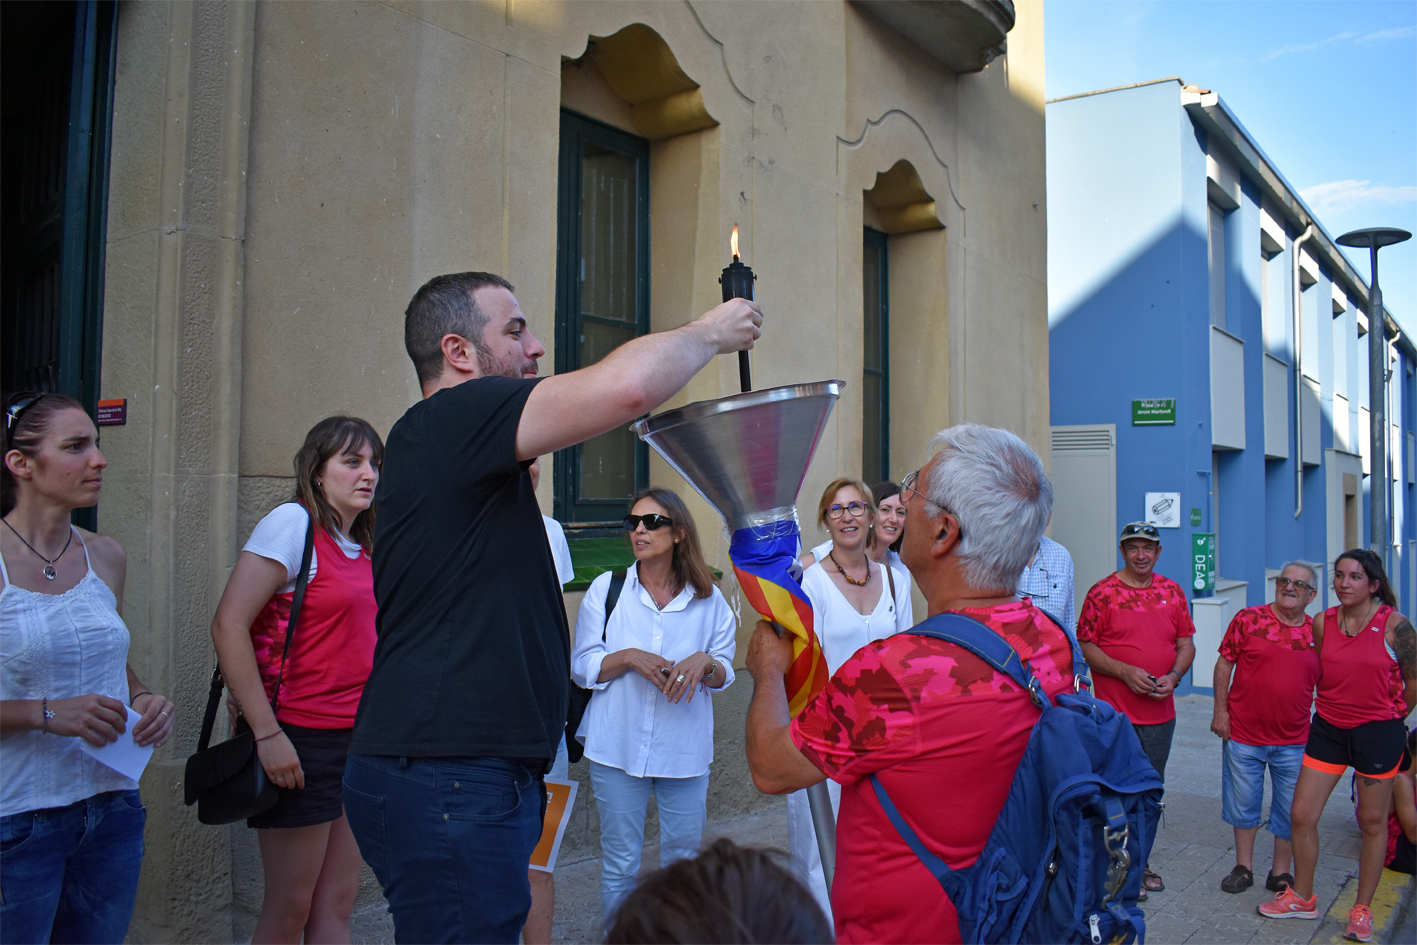 Lâ€™alcalde Albert CoberÃ³ encÃ©n el peveter amb la Flama del CanigÃ³ al davant de la Casa de la Vila, dins de la celebraciÃ³ de la Nit de Sant Joan a SÃºria.